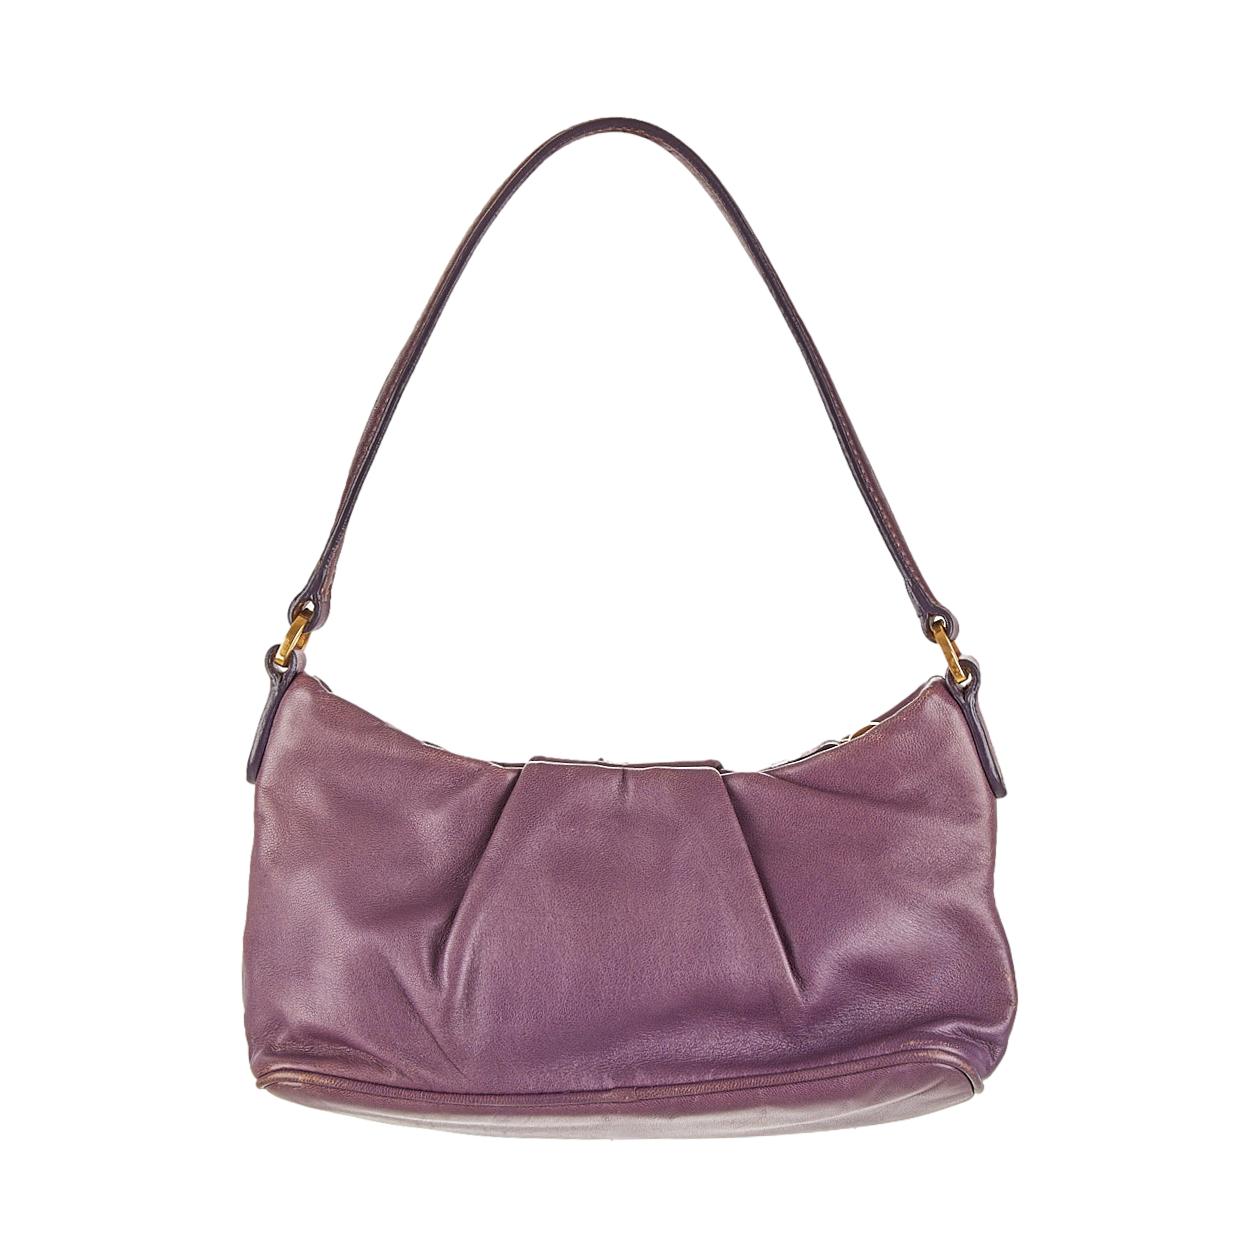 Prada Purple Floral Mini Shoulder Bag